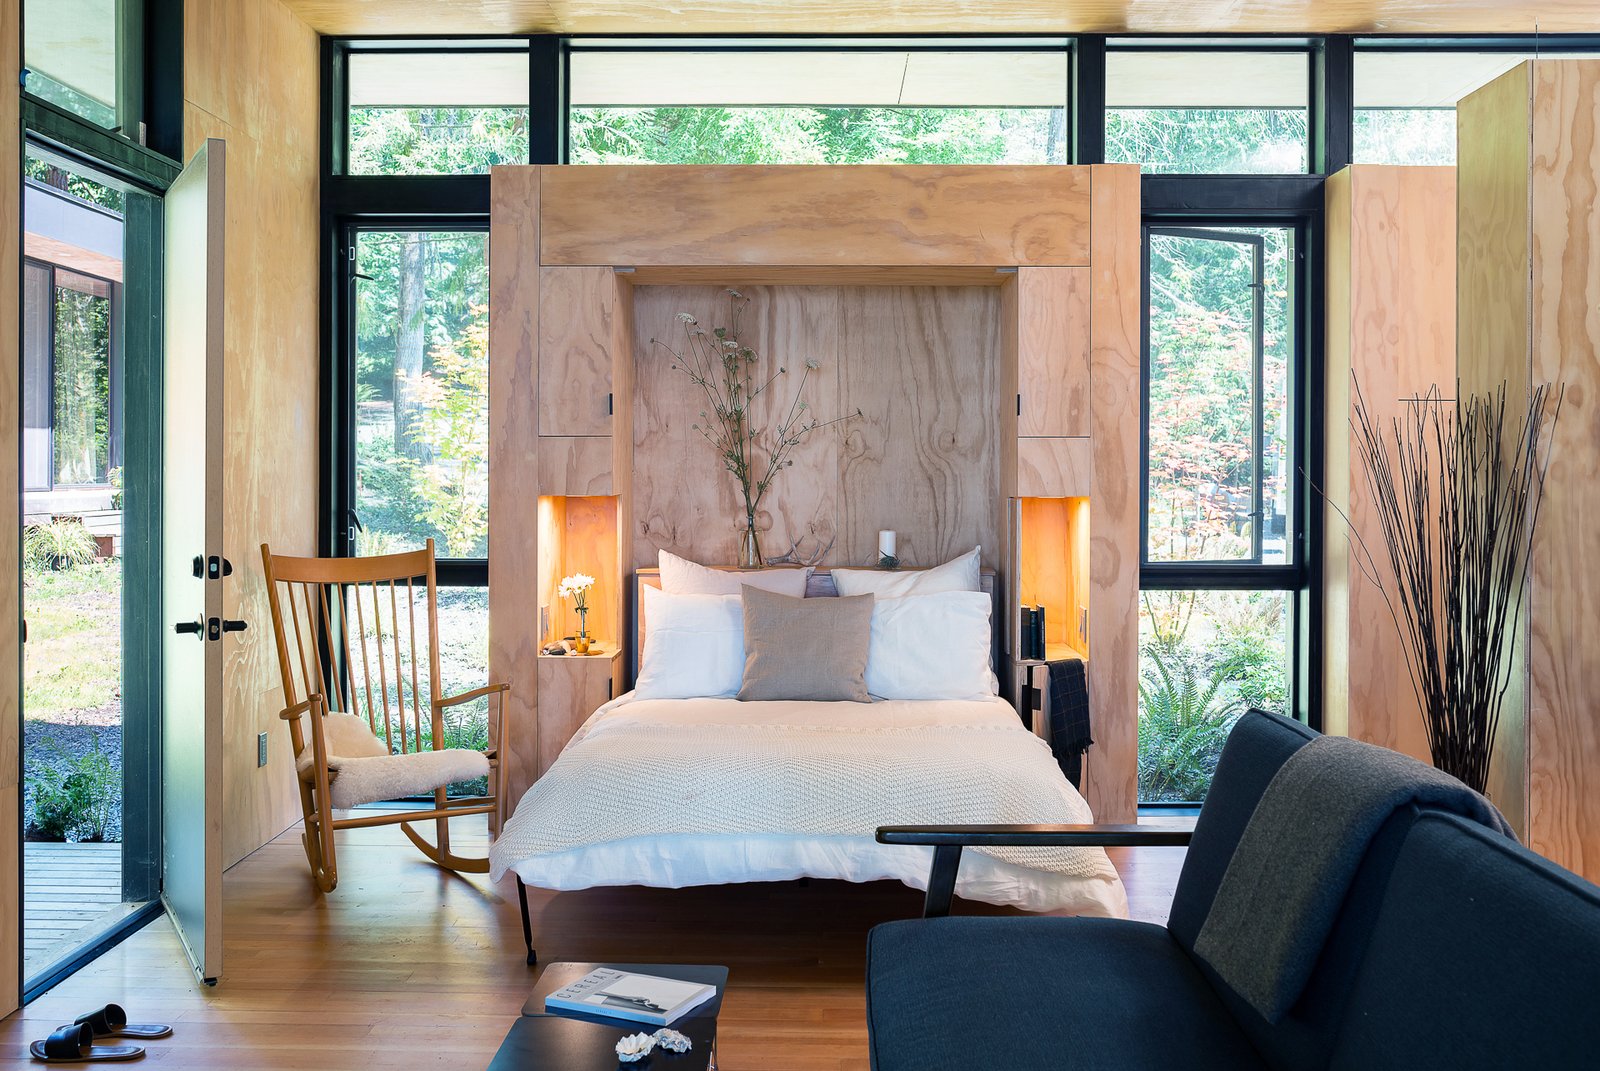 Ngôi nhà nhỏ lãng mạn bao bọc xung quanh bởi tường kính trong suốt nhìn ra cây cối xanh tươi. Giường Murphy vật liệu gỗ cũng đẹp mắt và hài hòa với khung cảnh.